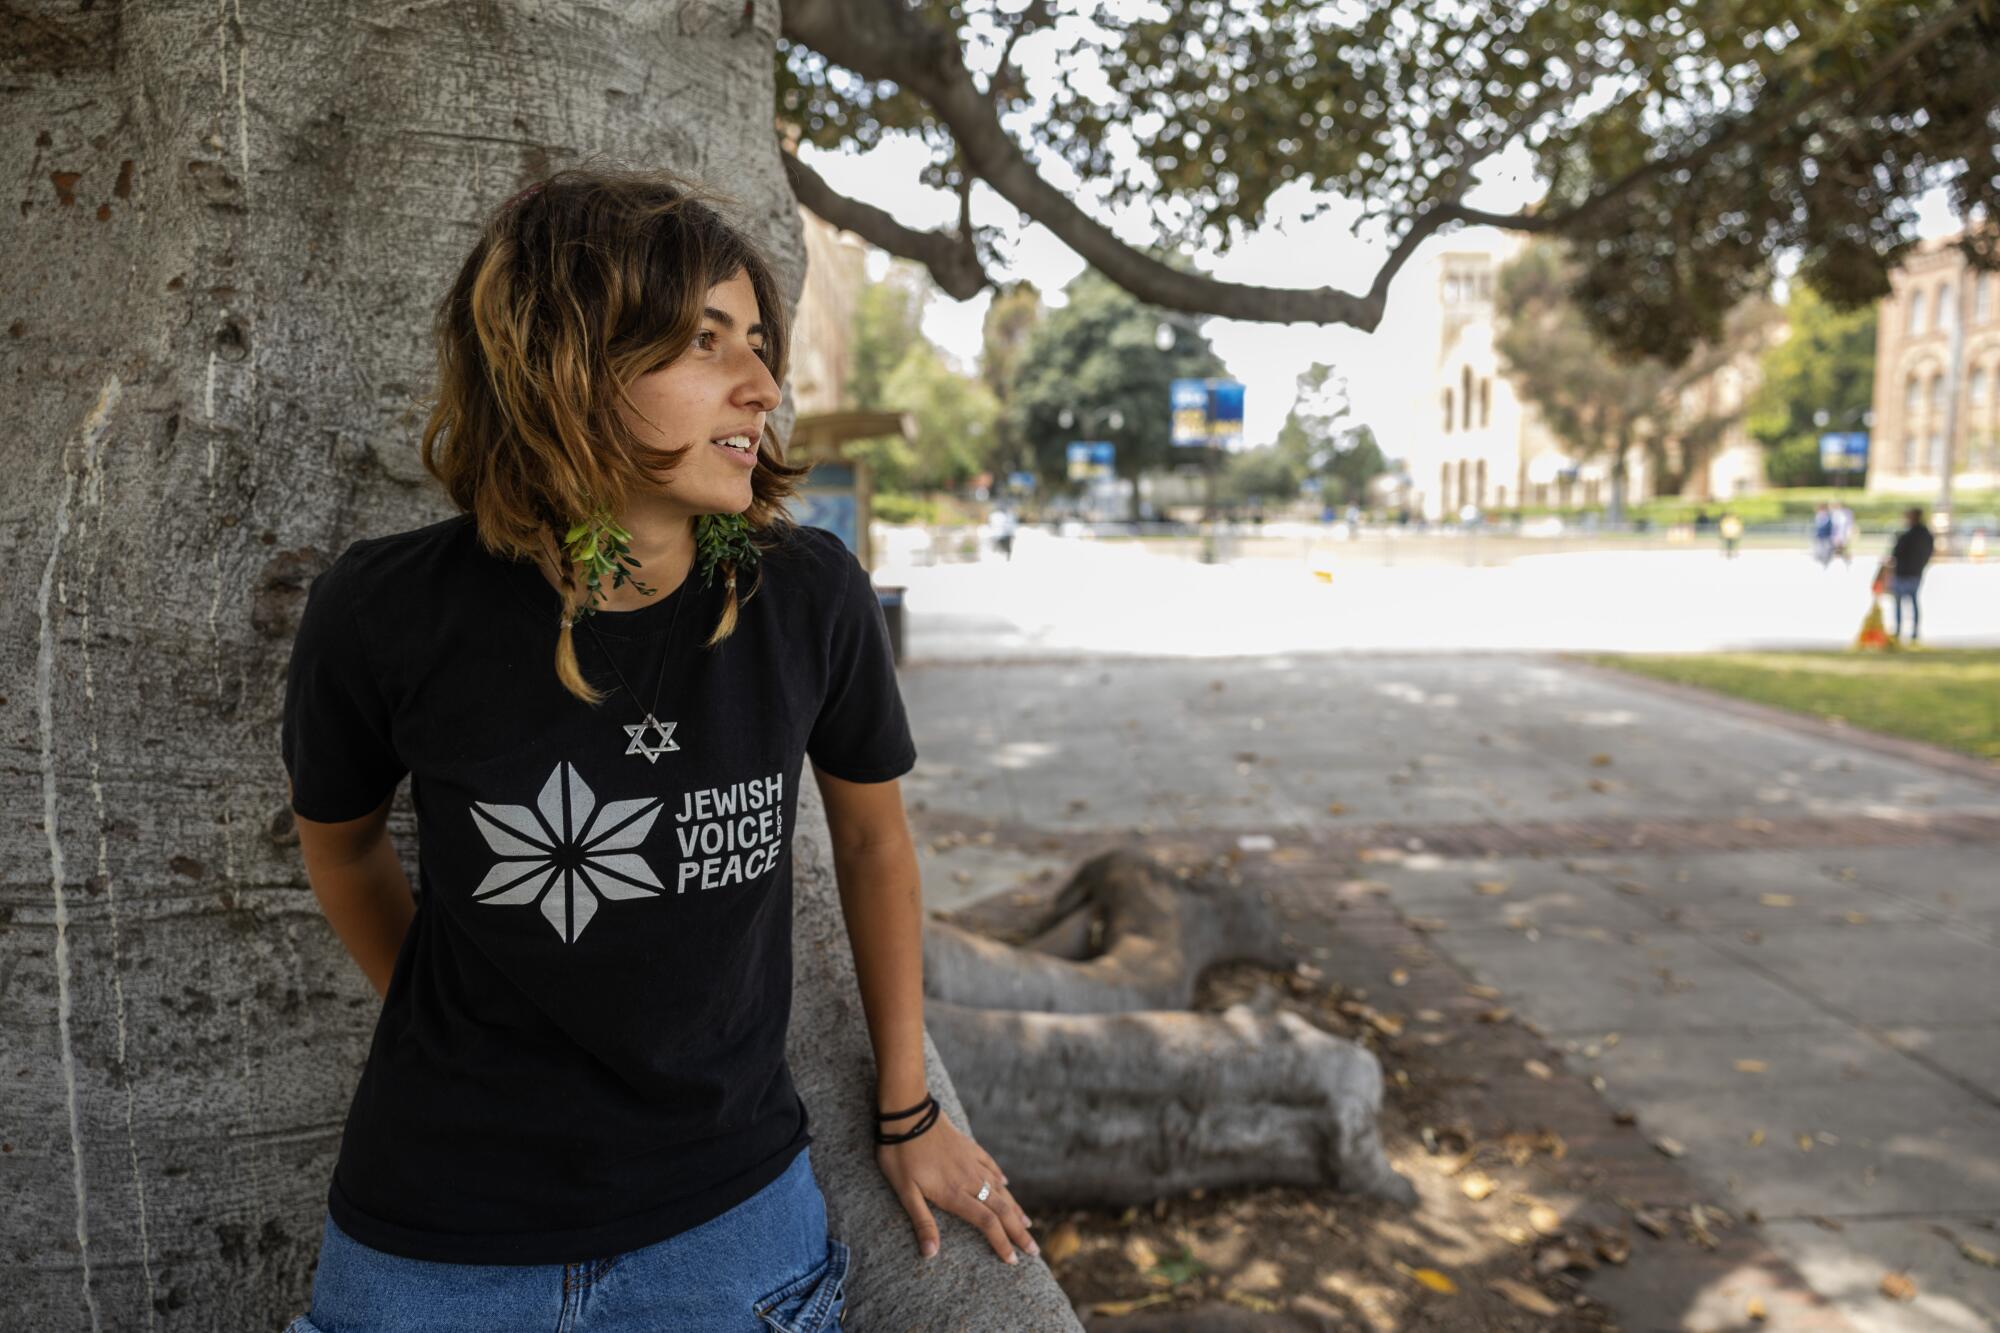 加州大学洛杉矶分校学生萨布丽娜·埃利斯佩戴大卫之星项链和衬衫阅读 